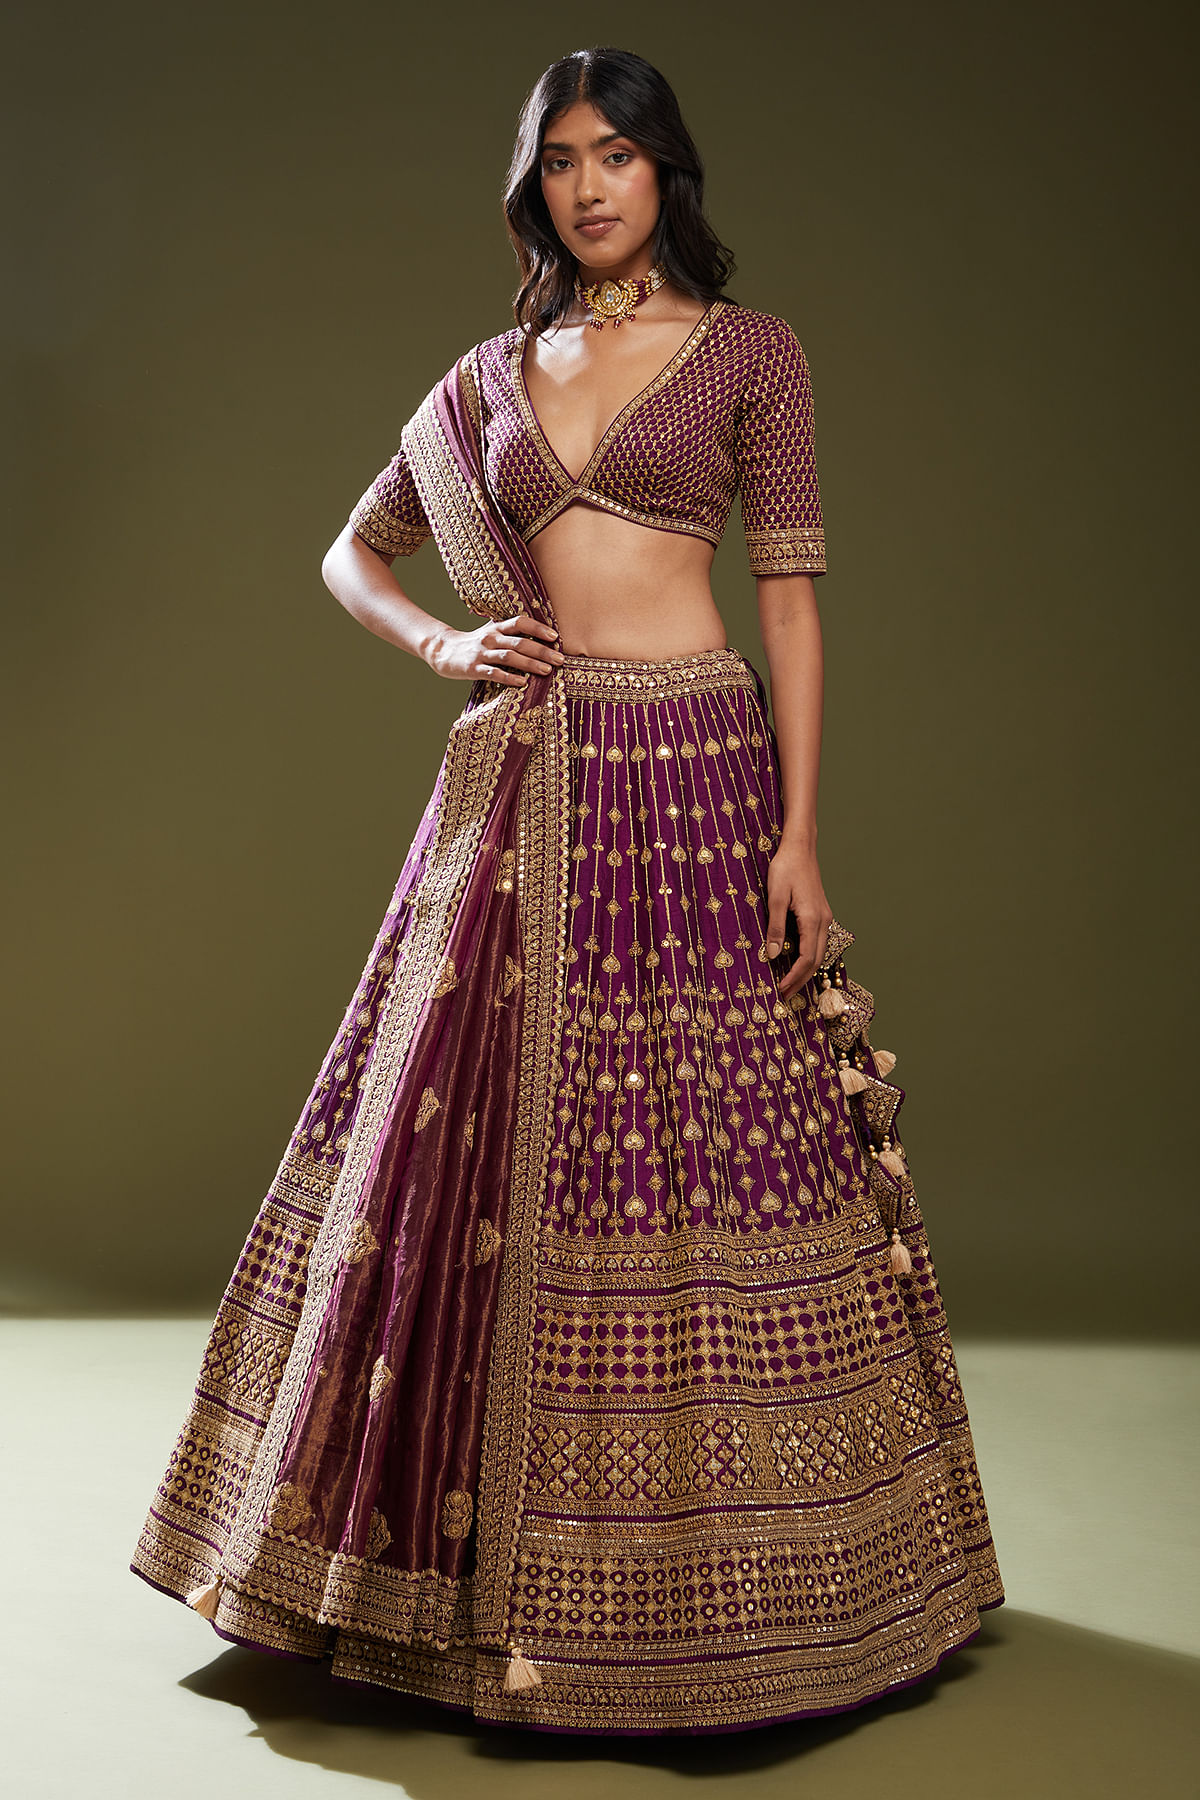 Angalakruthi bridal boutique in Bangalore: Bridal lehenga blouse desigins  in bangalore by Angalakruthi designer studio